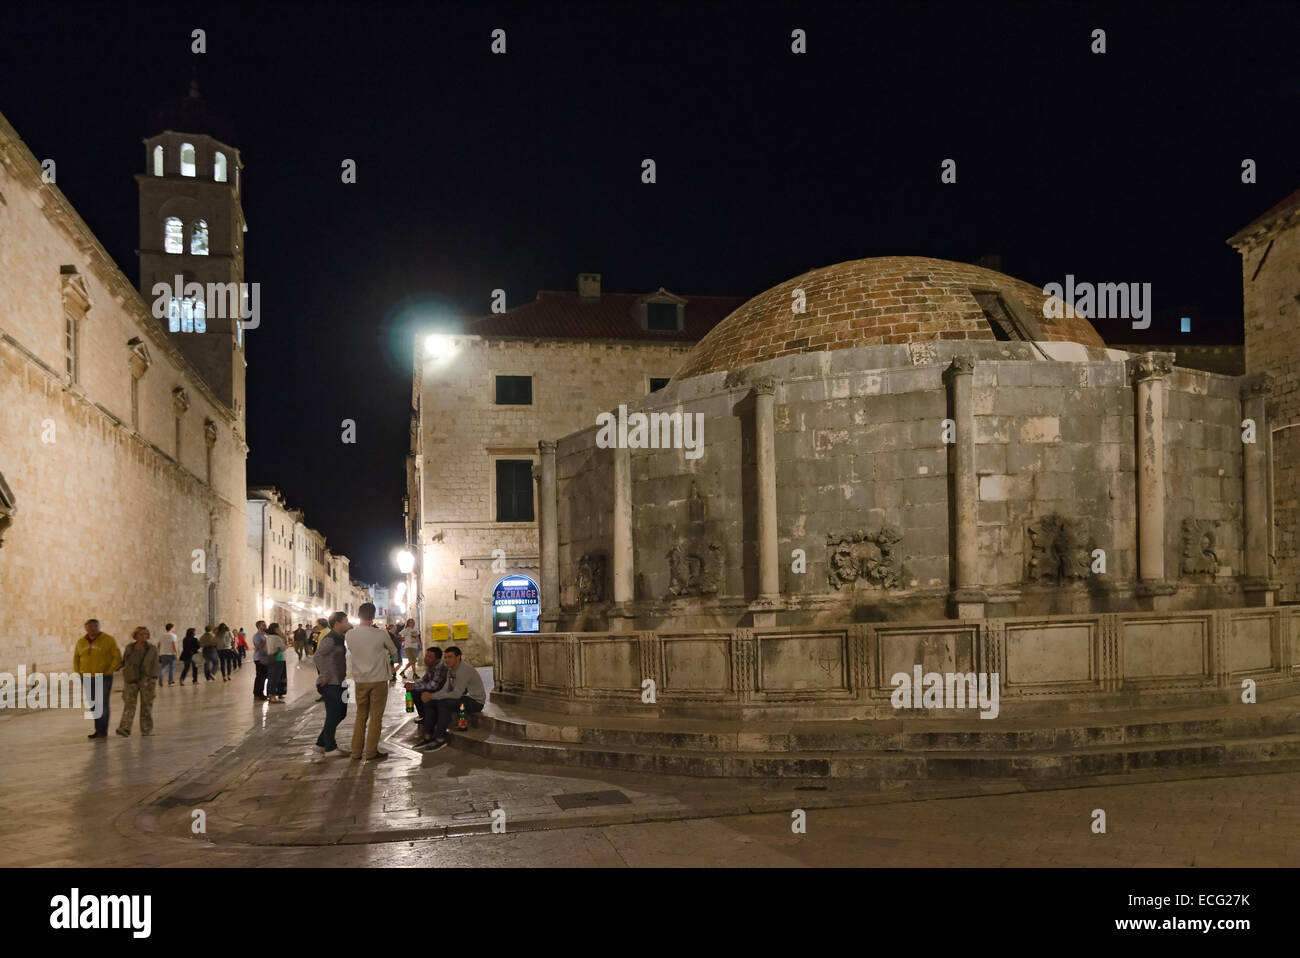 DUBROVNIK, Croatie - 16 MAI 2013 : Les gens visitent la fontaine d'Onofrio dans la vieille ville de Dubrovnik en Croatie. La fontaine d'Onofrio j Banque D'Images